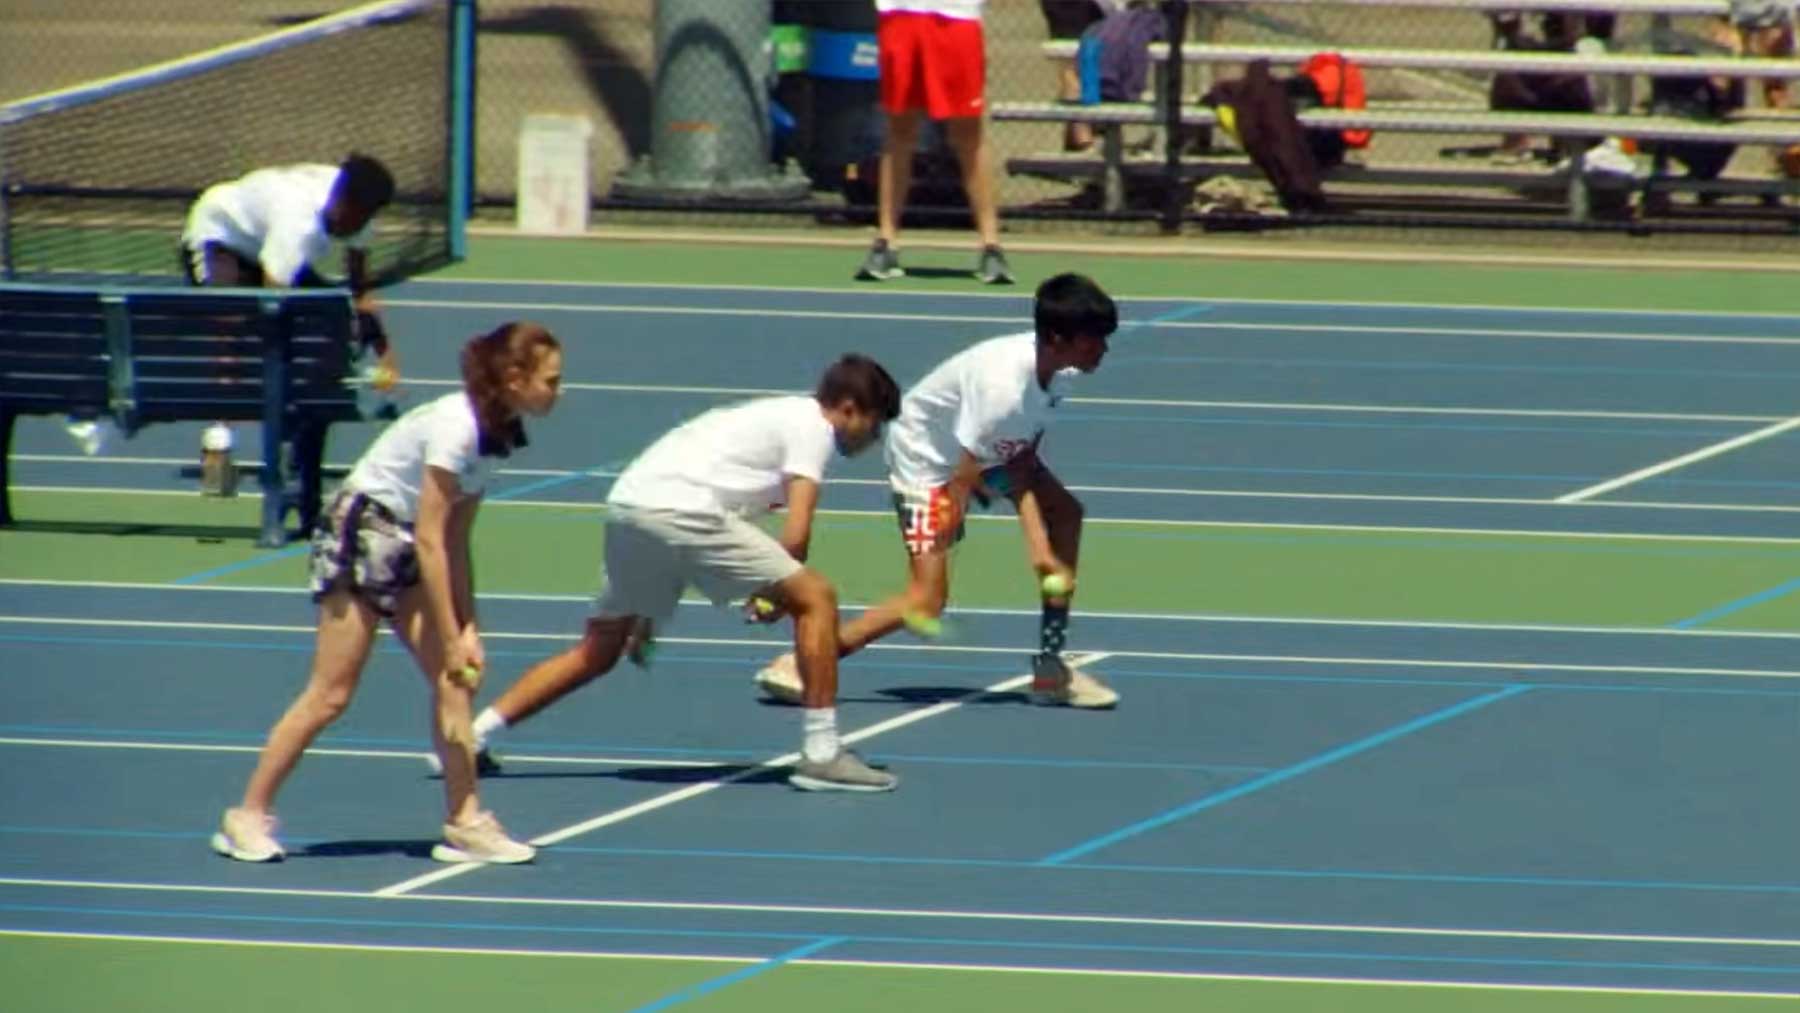 Dokumentation über Balljungen & -Mädchen beim Tennis